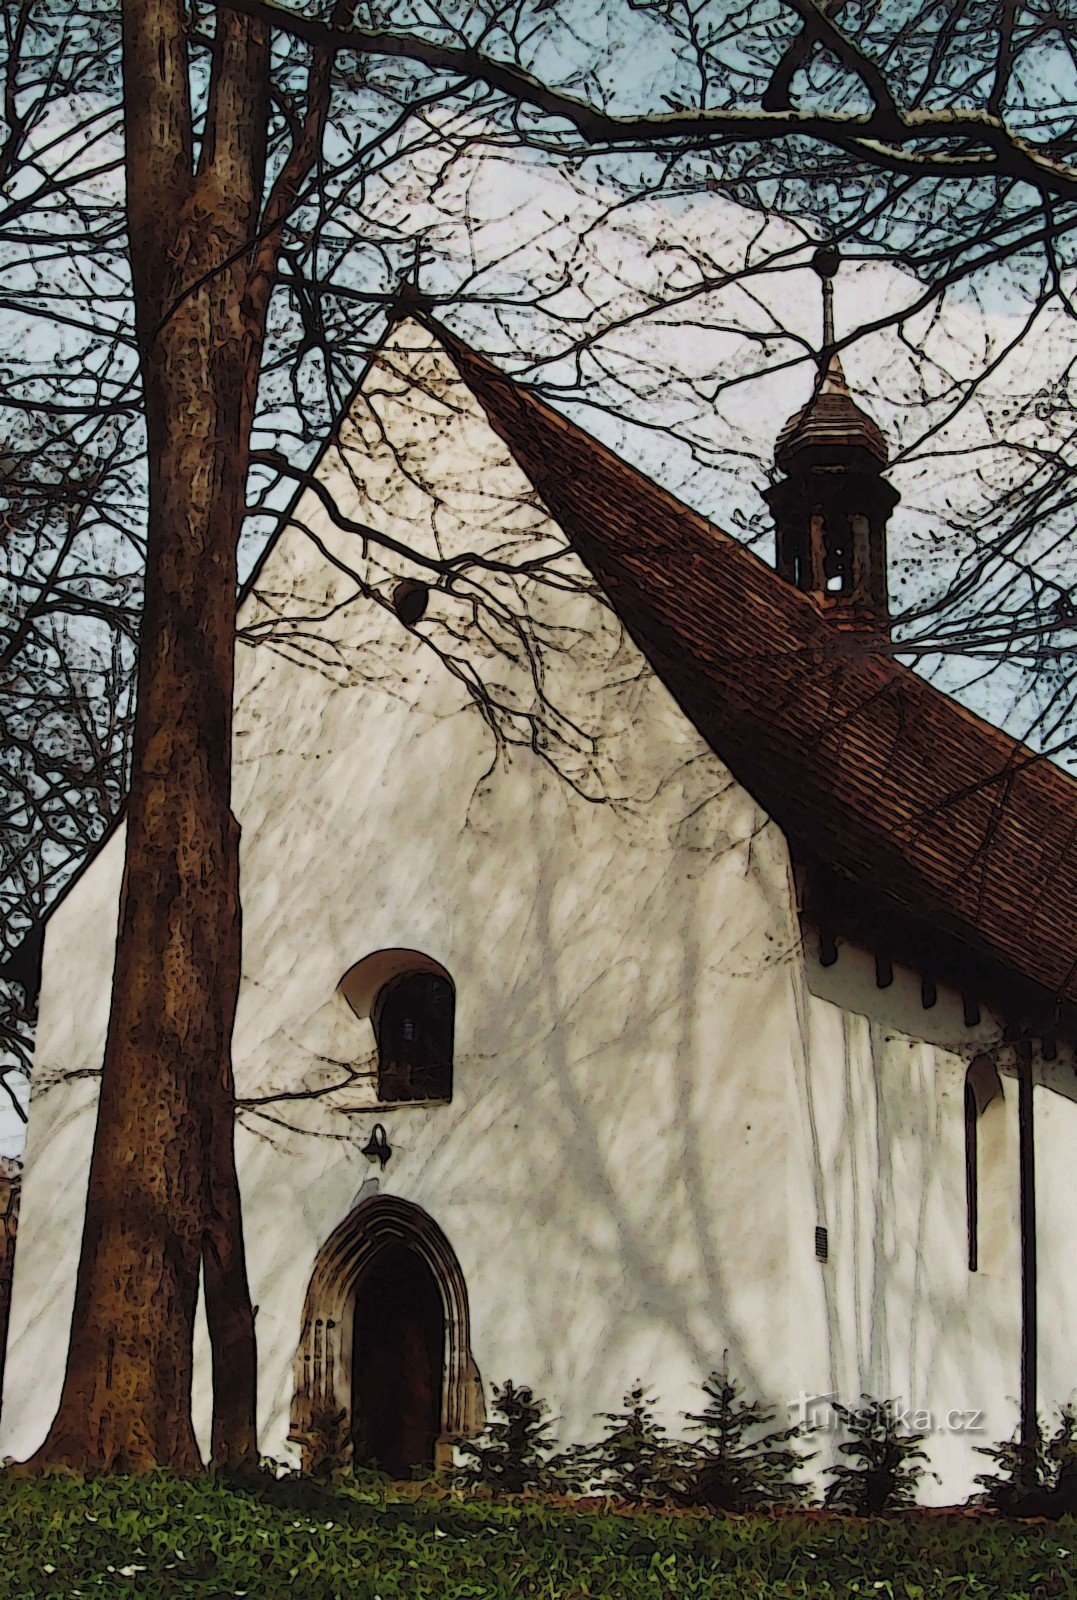 Valašské Meziříčí - Nhà thờ St. James xinh đẹp